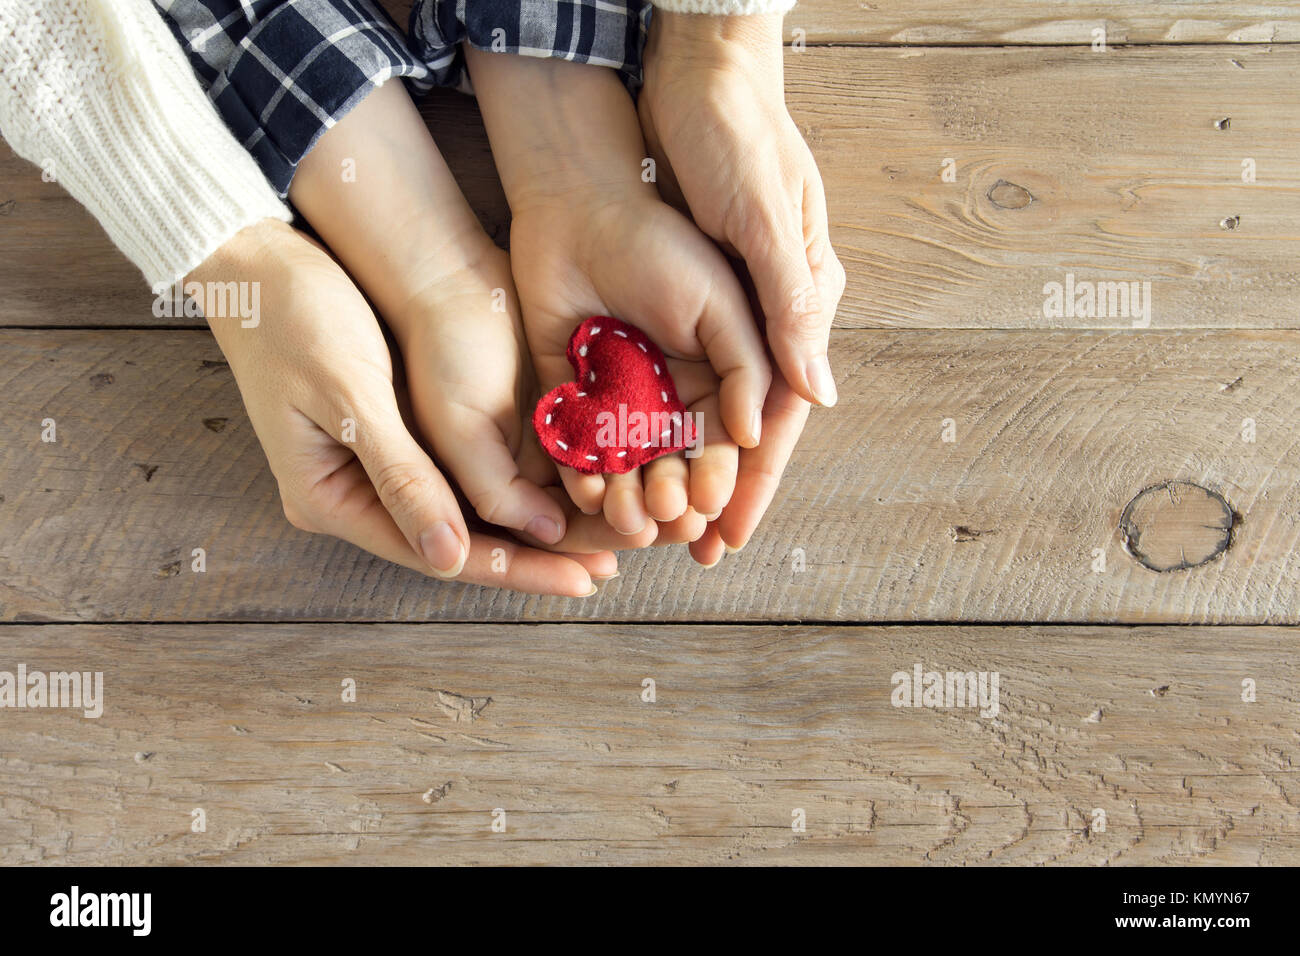 Rotes Herz im Kind und weibliche Hände über Holz- Hintergrund, kopieren. Freundlichkeit, Familie, Liebe und Nächstenliebe Konzept, zum Valentinstag oder Muttertag da Stockfoto